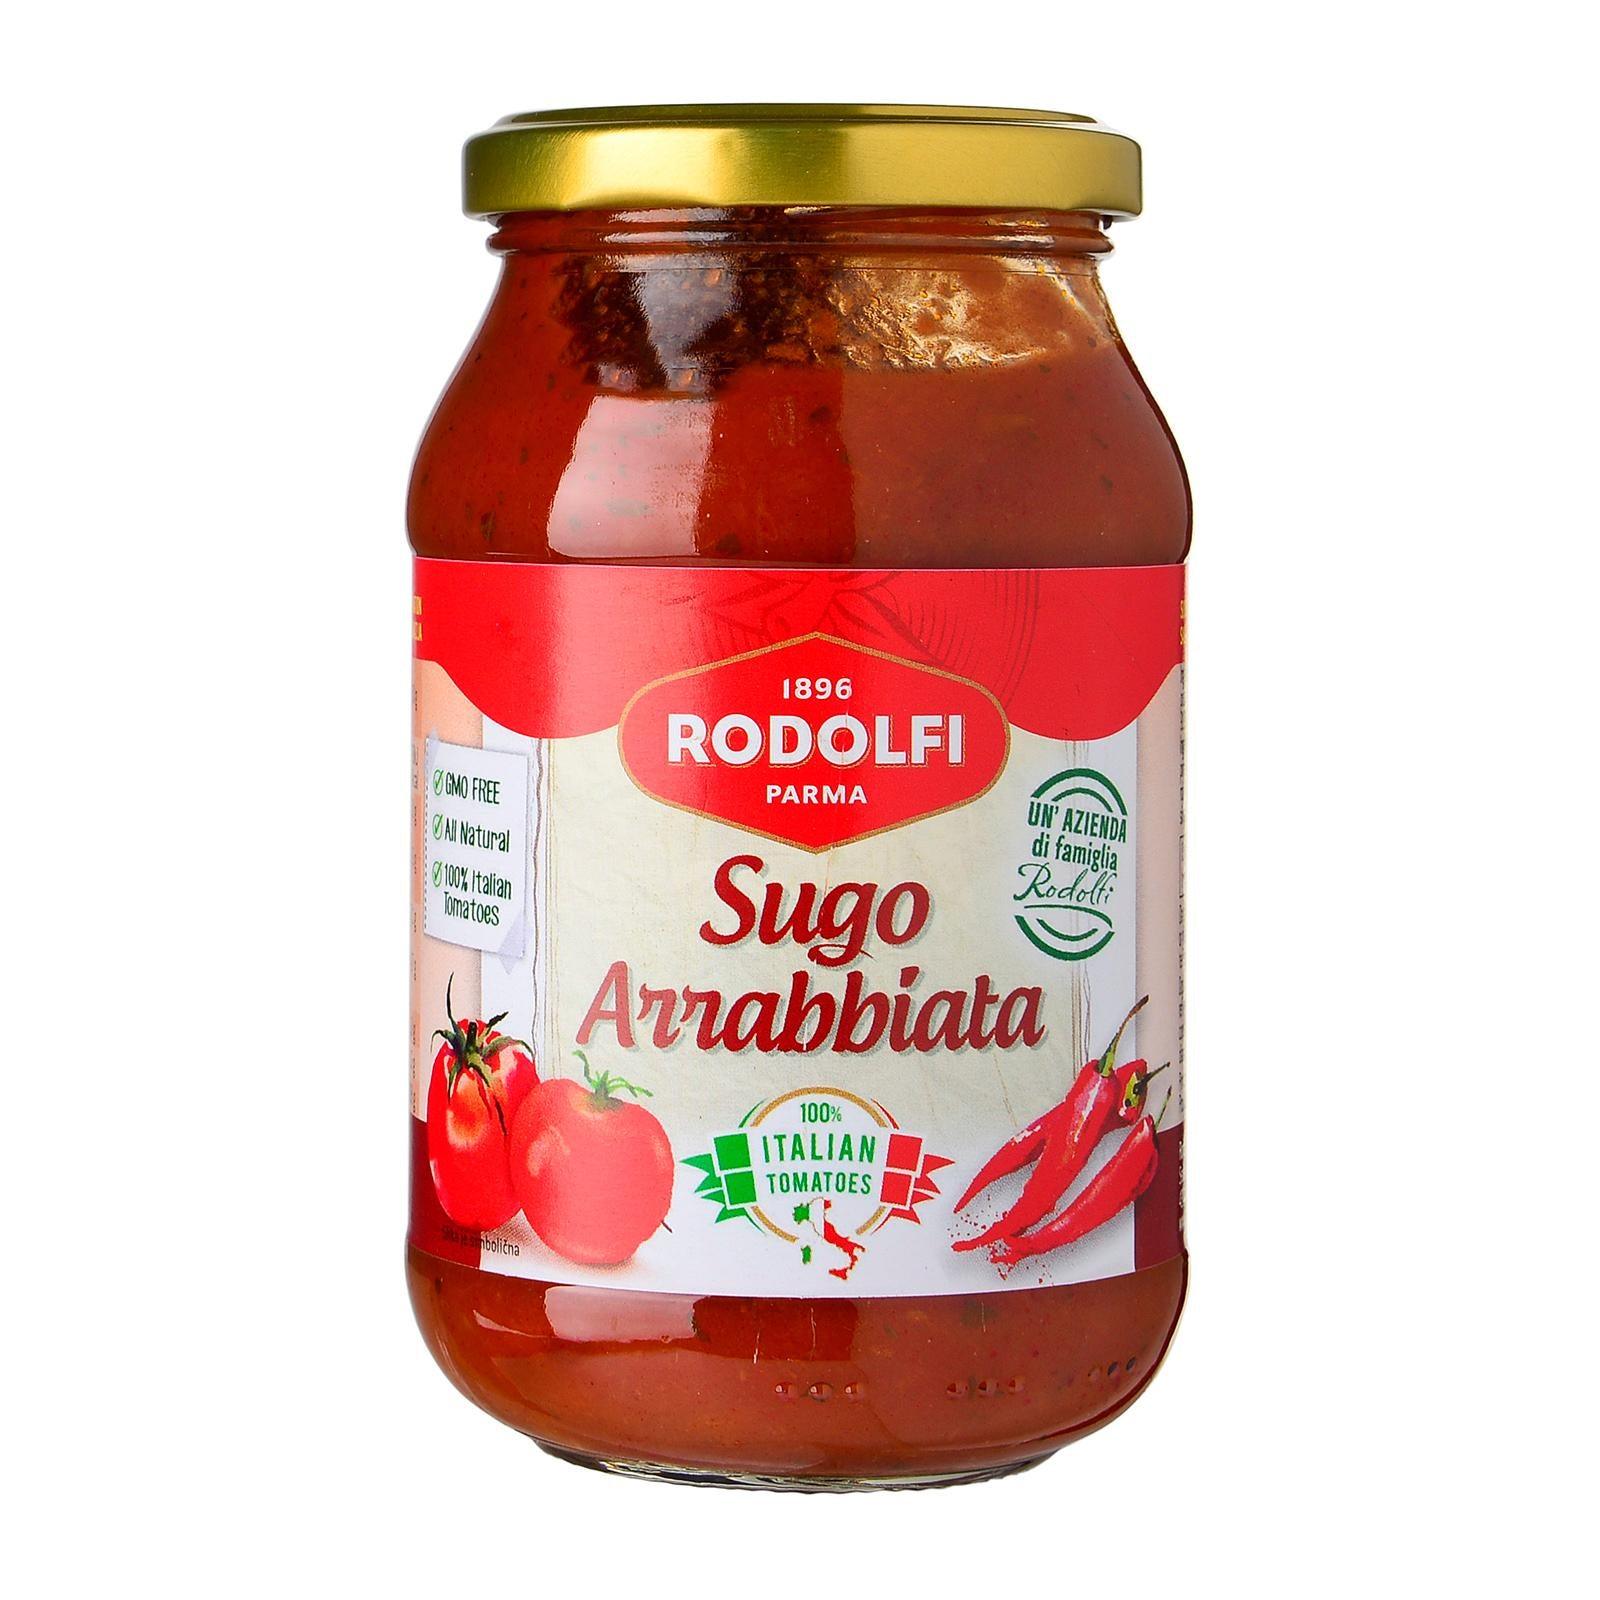 Rodolfi Spicy Tomato Sauce Sugo Arrabbiata 400g - reddotgreendot